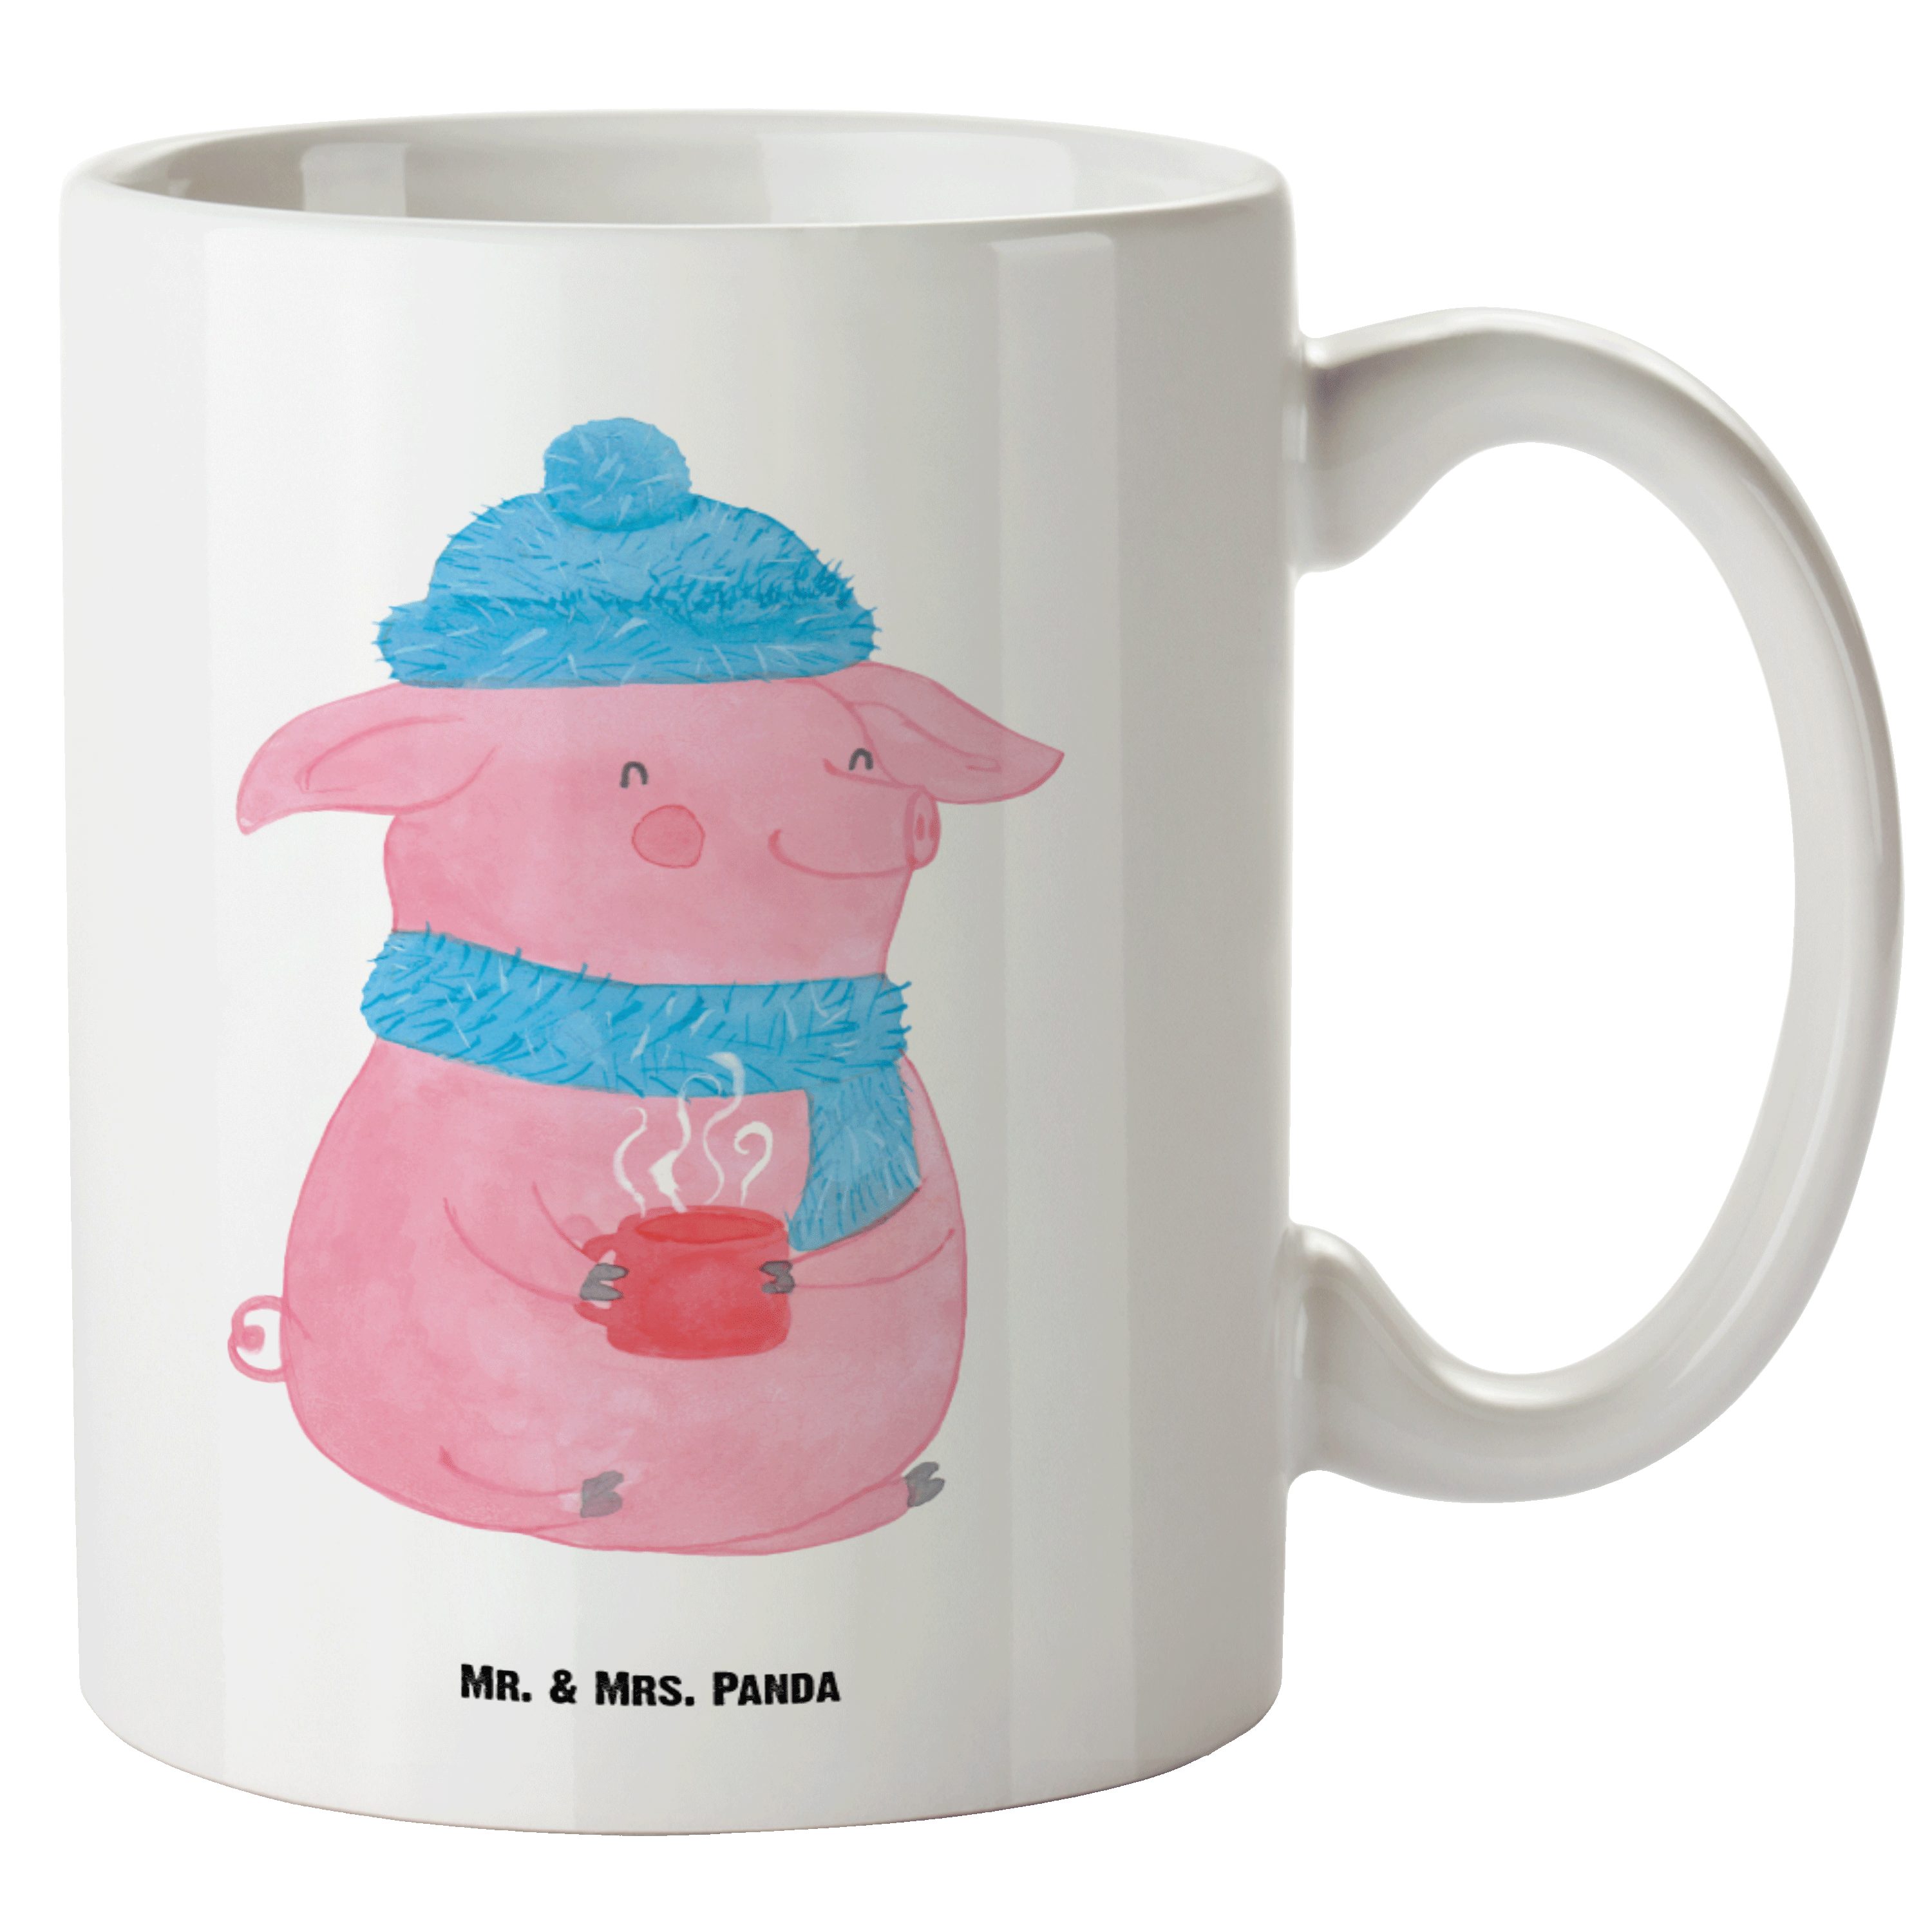 Mr. & Mrs. Panda Tasse Glühschwein - Weiß - Geschenk, Punsch, Grosse Kaffeetasse, Weihnachts, XL Tasse Keramik